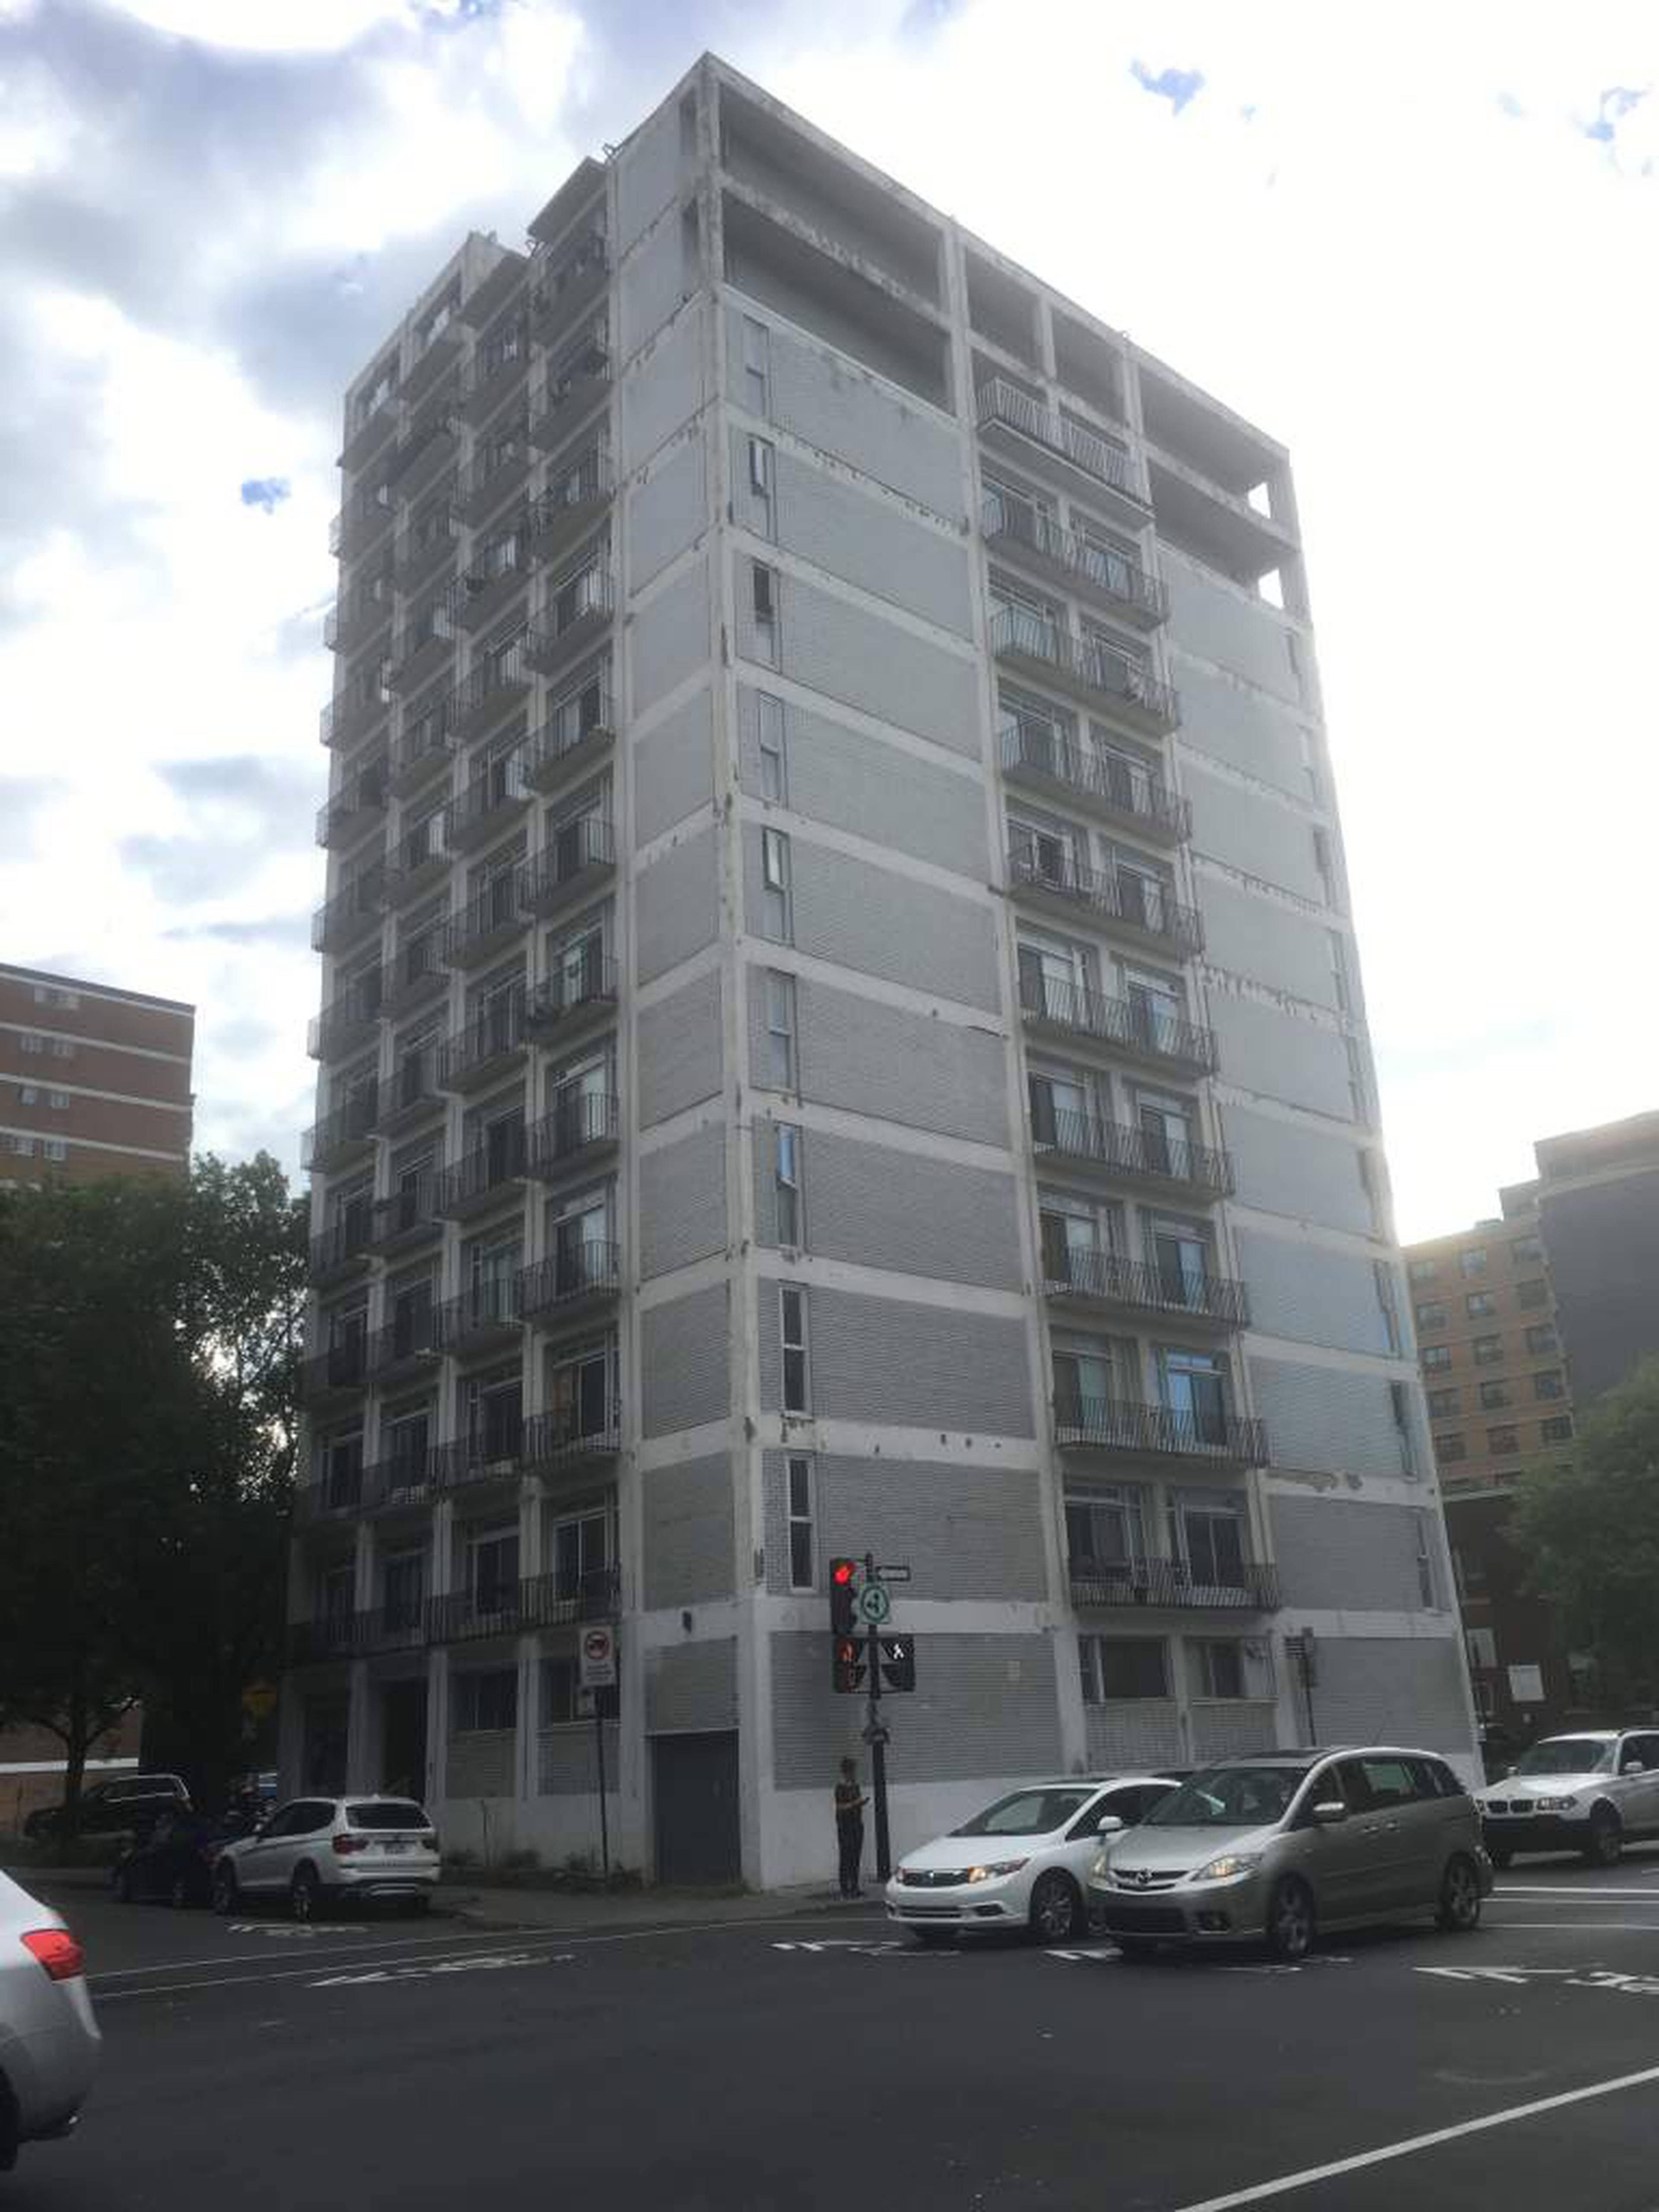 105 rue Milton Apartment Building